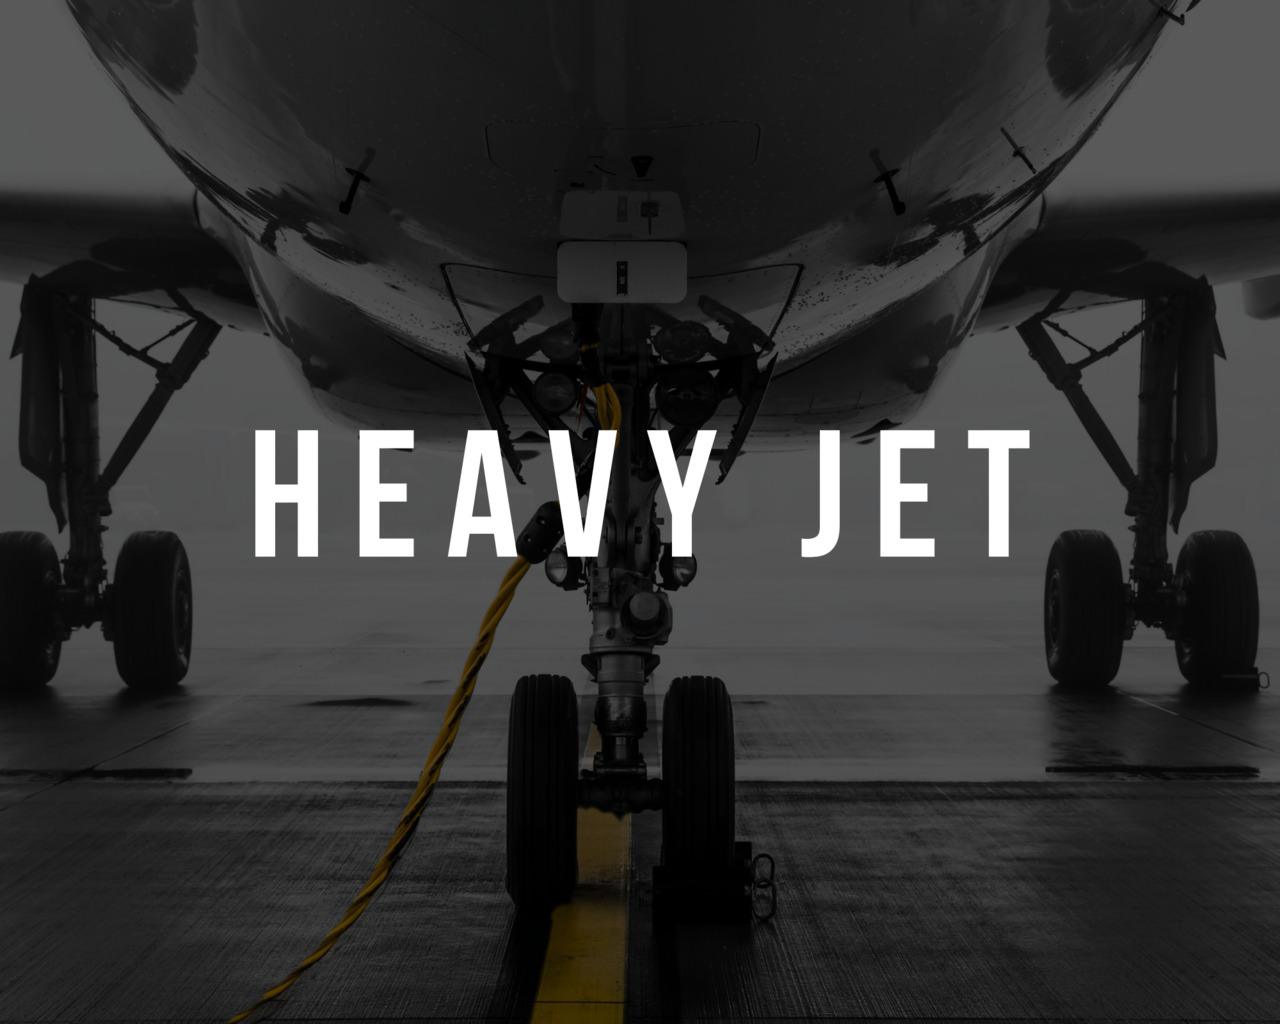 Heavy jets